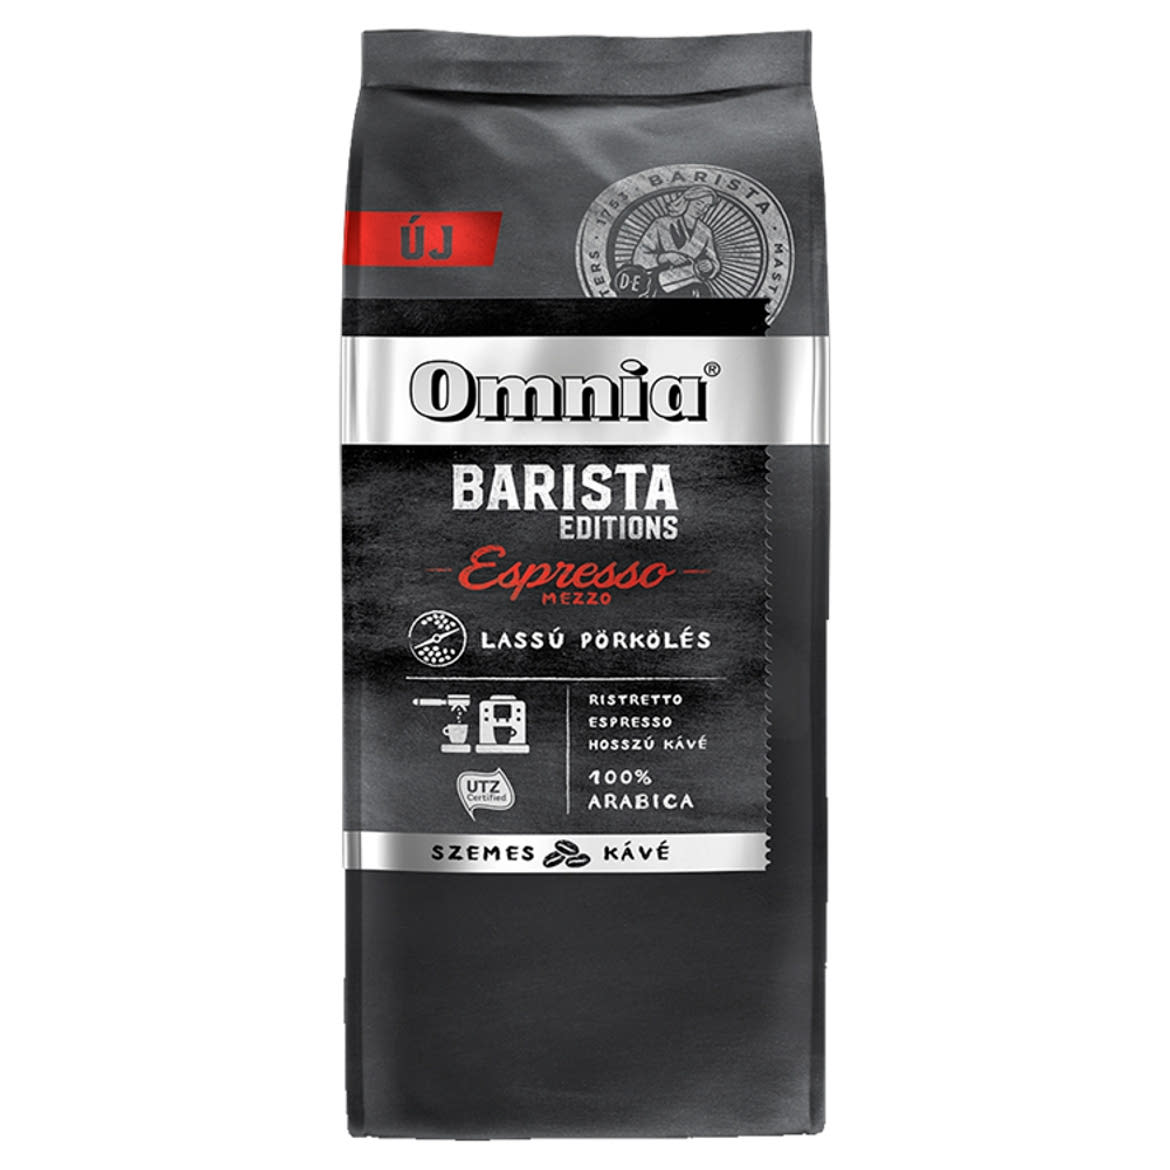 Omnia Barista Editions Espresso Mezzo szemes pörkölt kávé